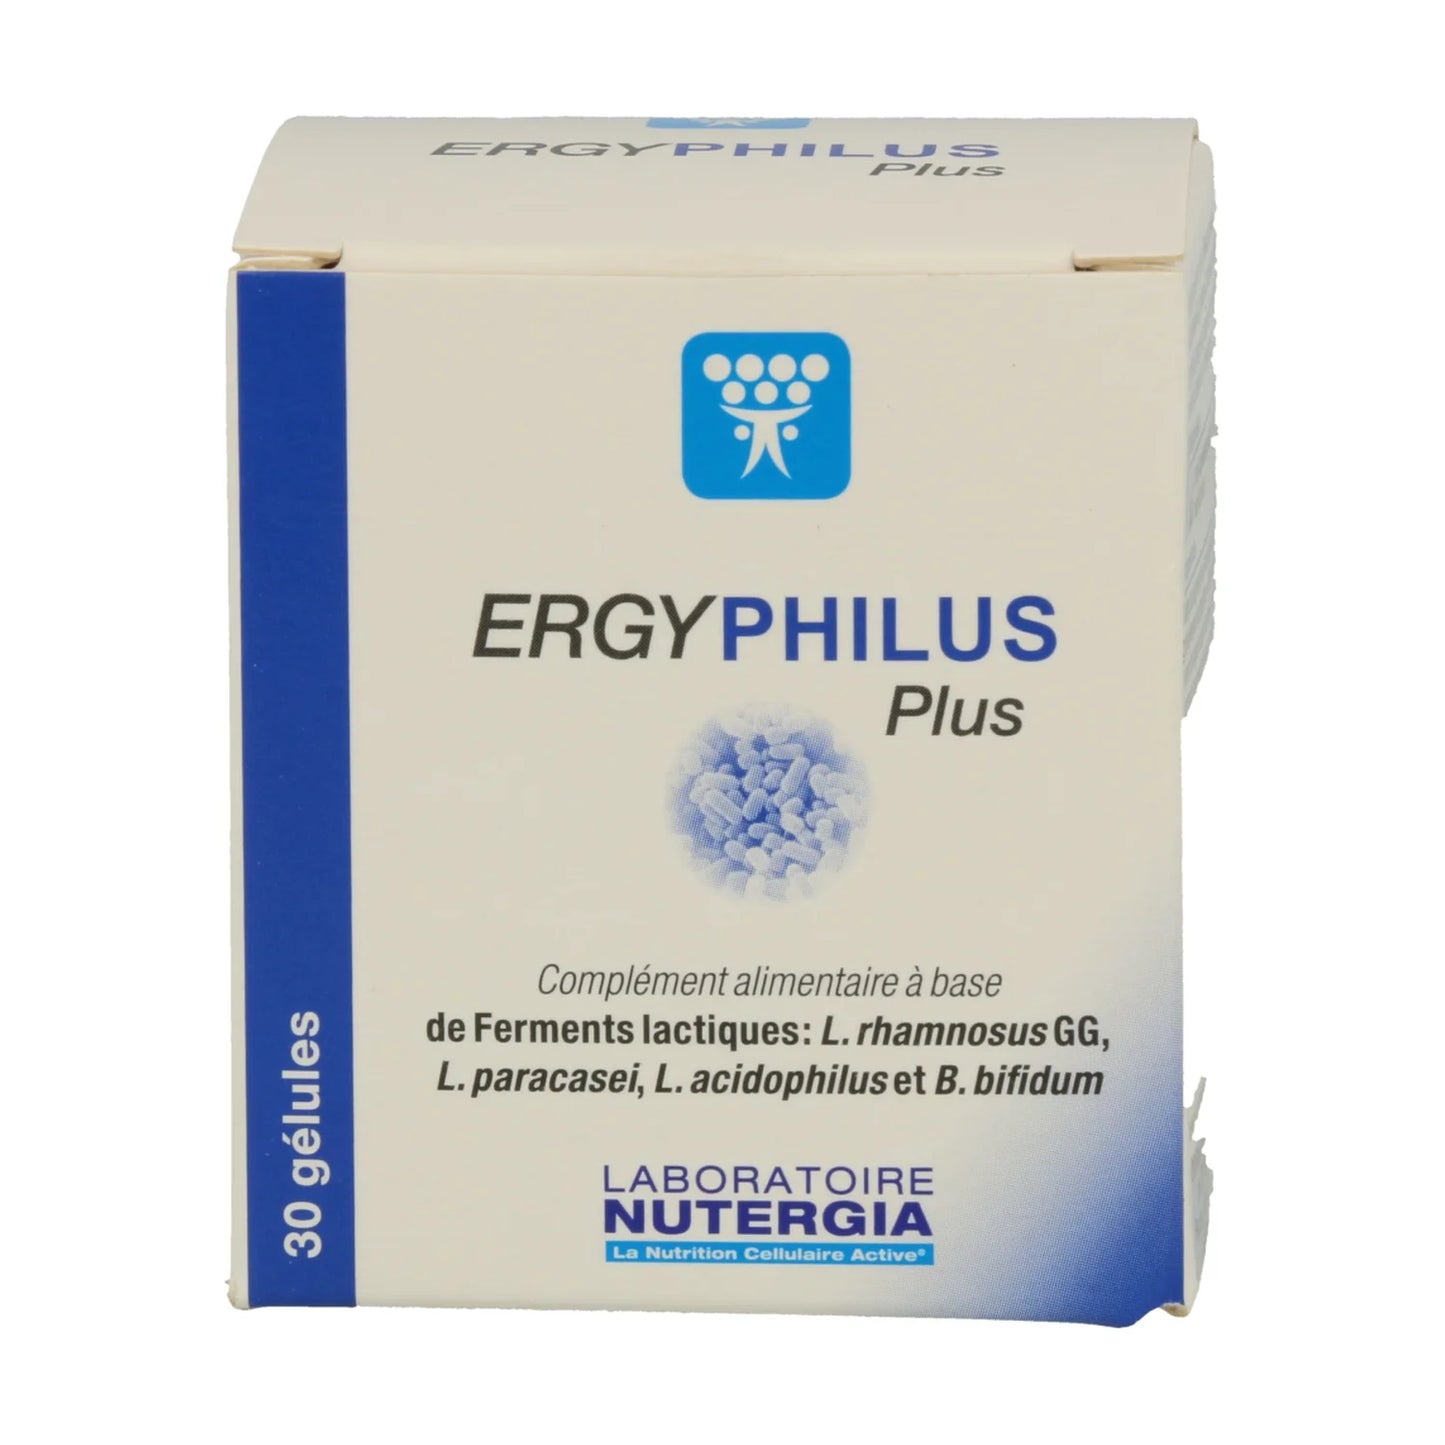 Ergyphilus Plus - Nutergia